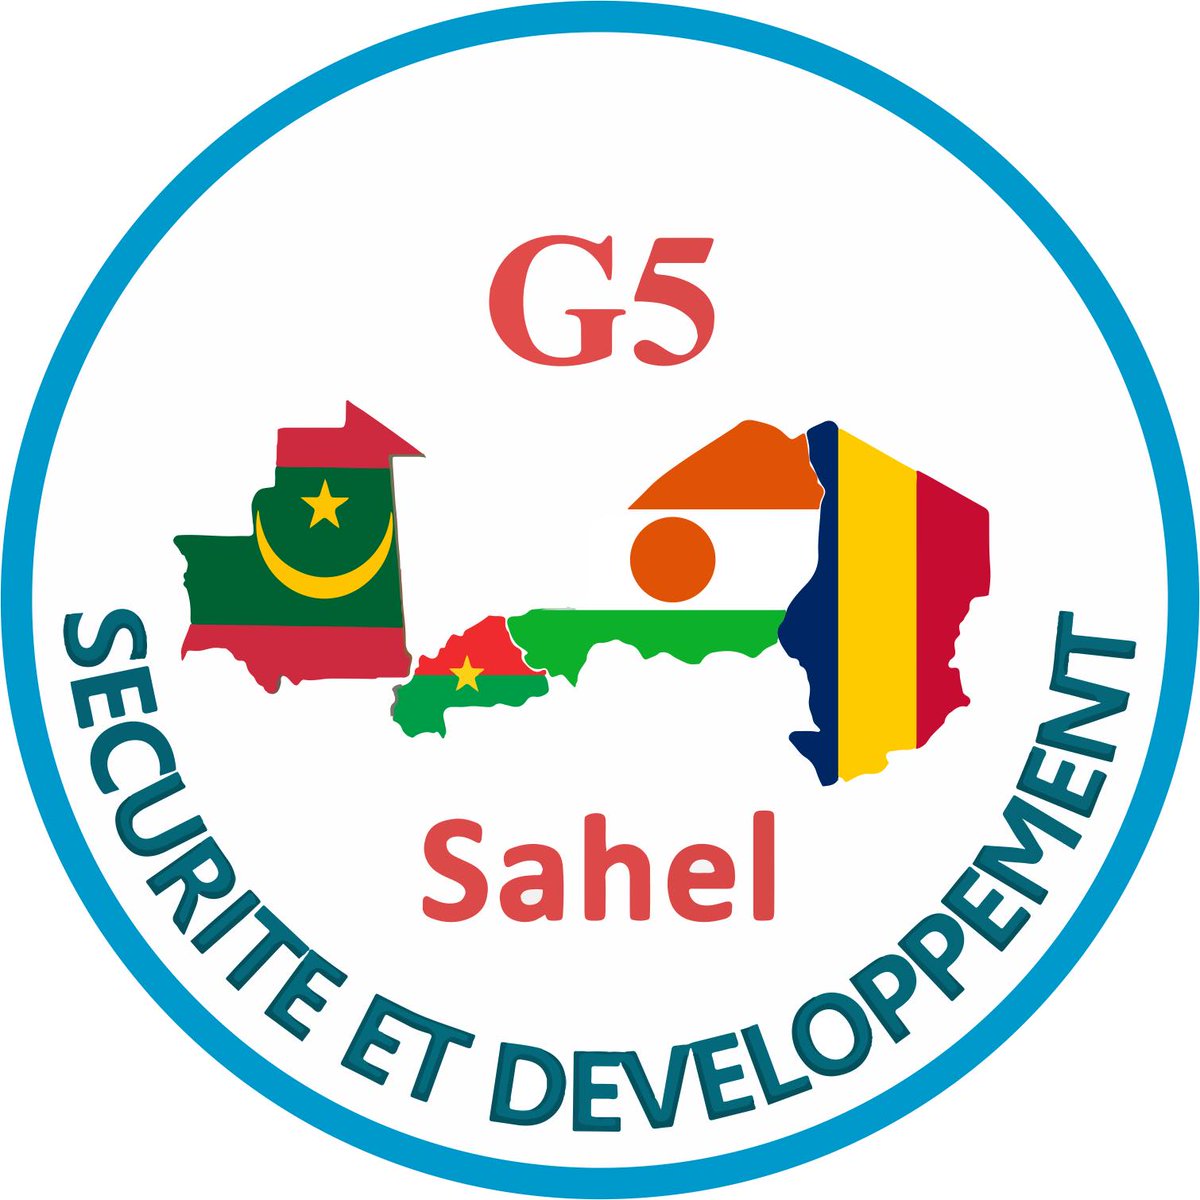 #G5sahel enlève le drapeau du #Mali des 5 pays qui l'organisent sur son #logo officiel.
#Sahel #Niger #Burkina #Mauritanie #Tchad 
@G5_Sahel_SE